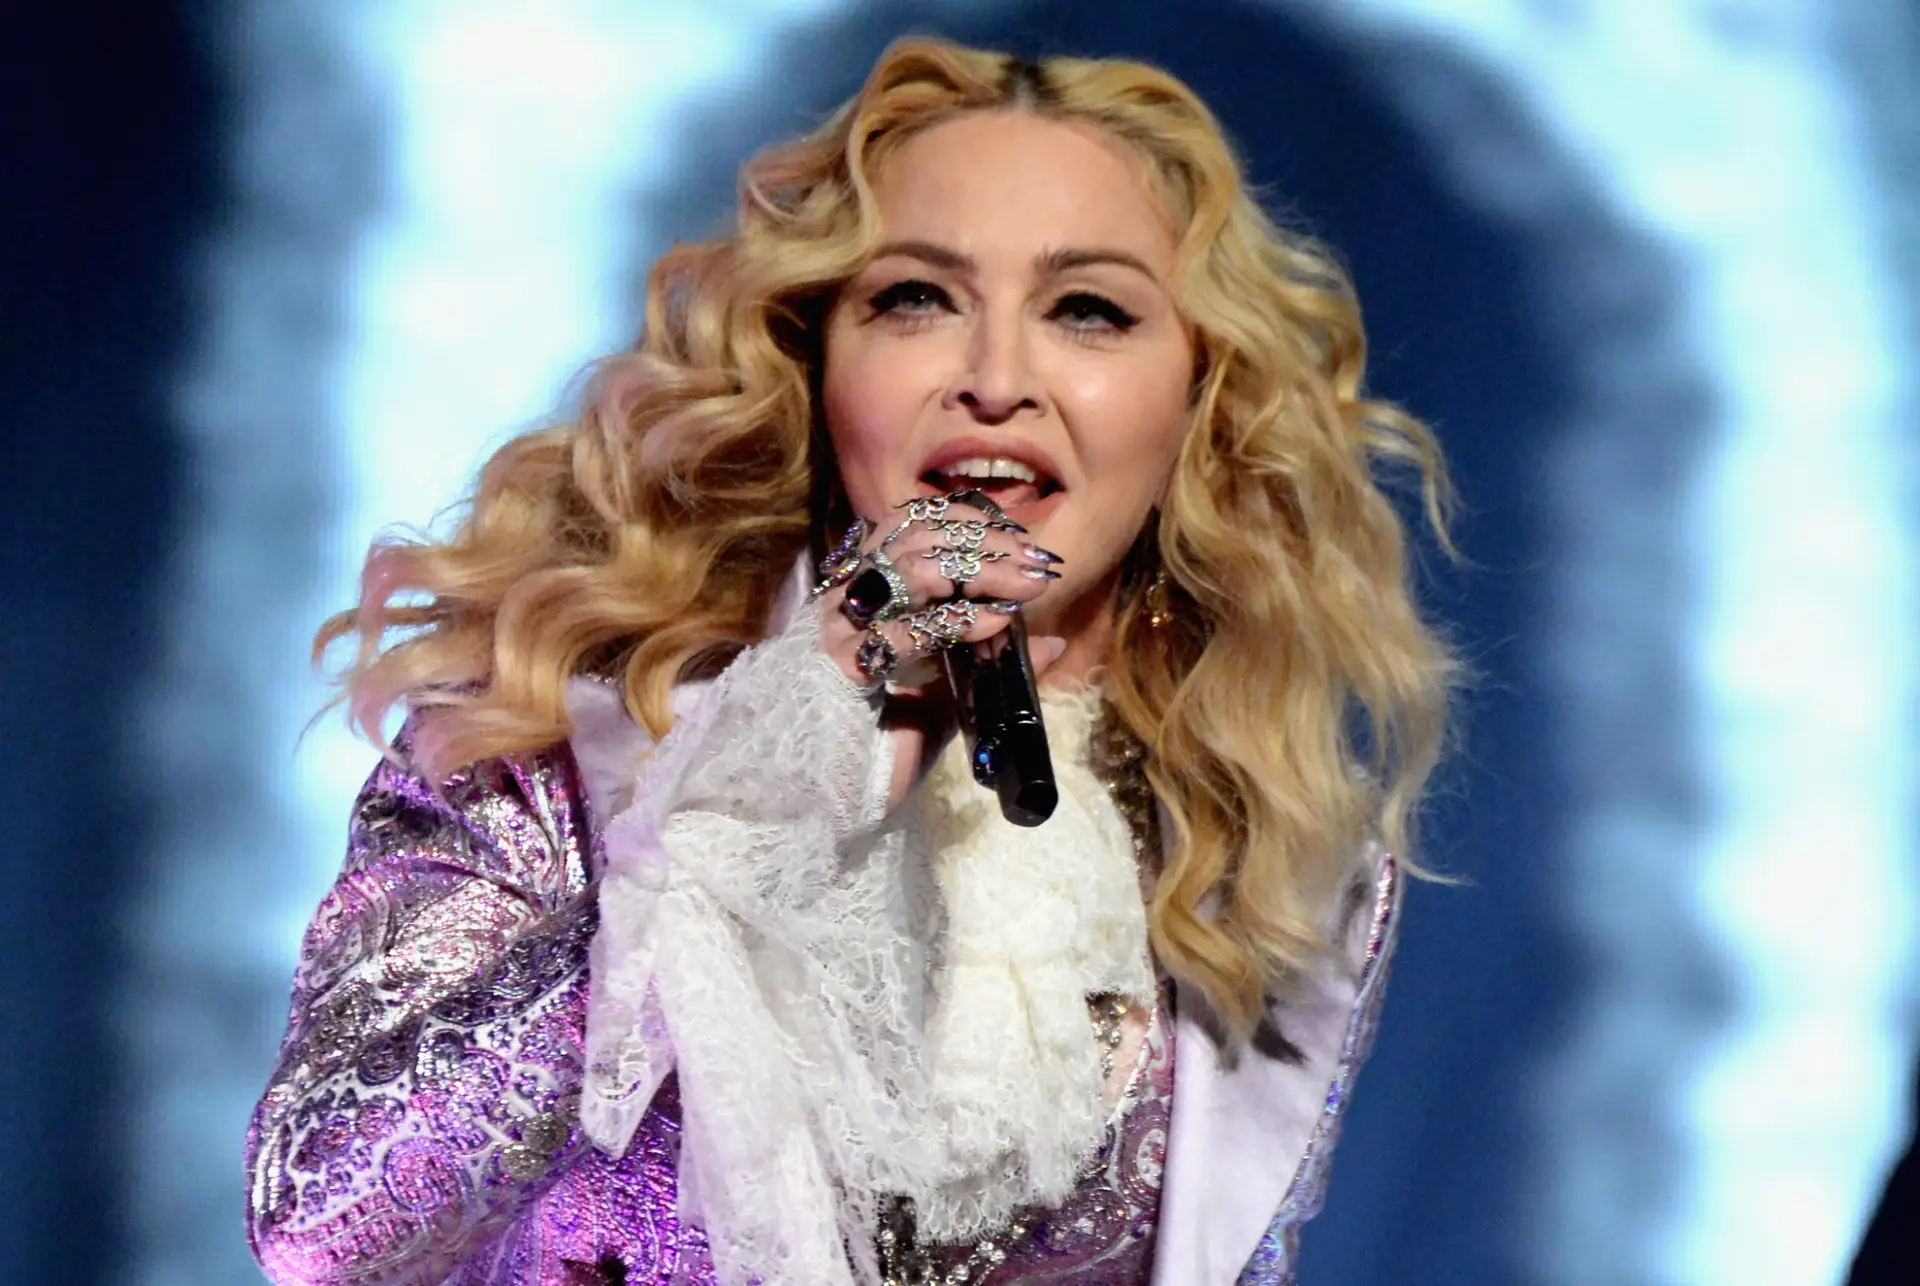 Concerto de Madonna em Lisboa “quase esgotado” nova data é “muito